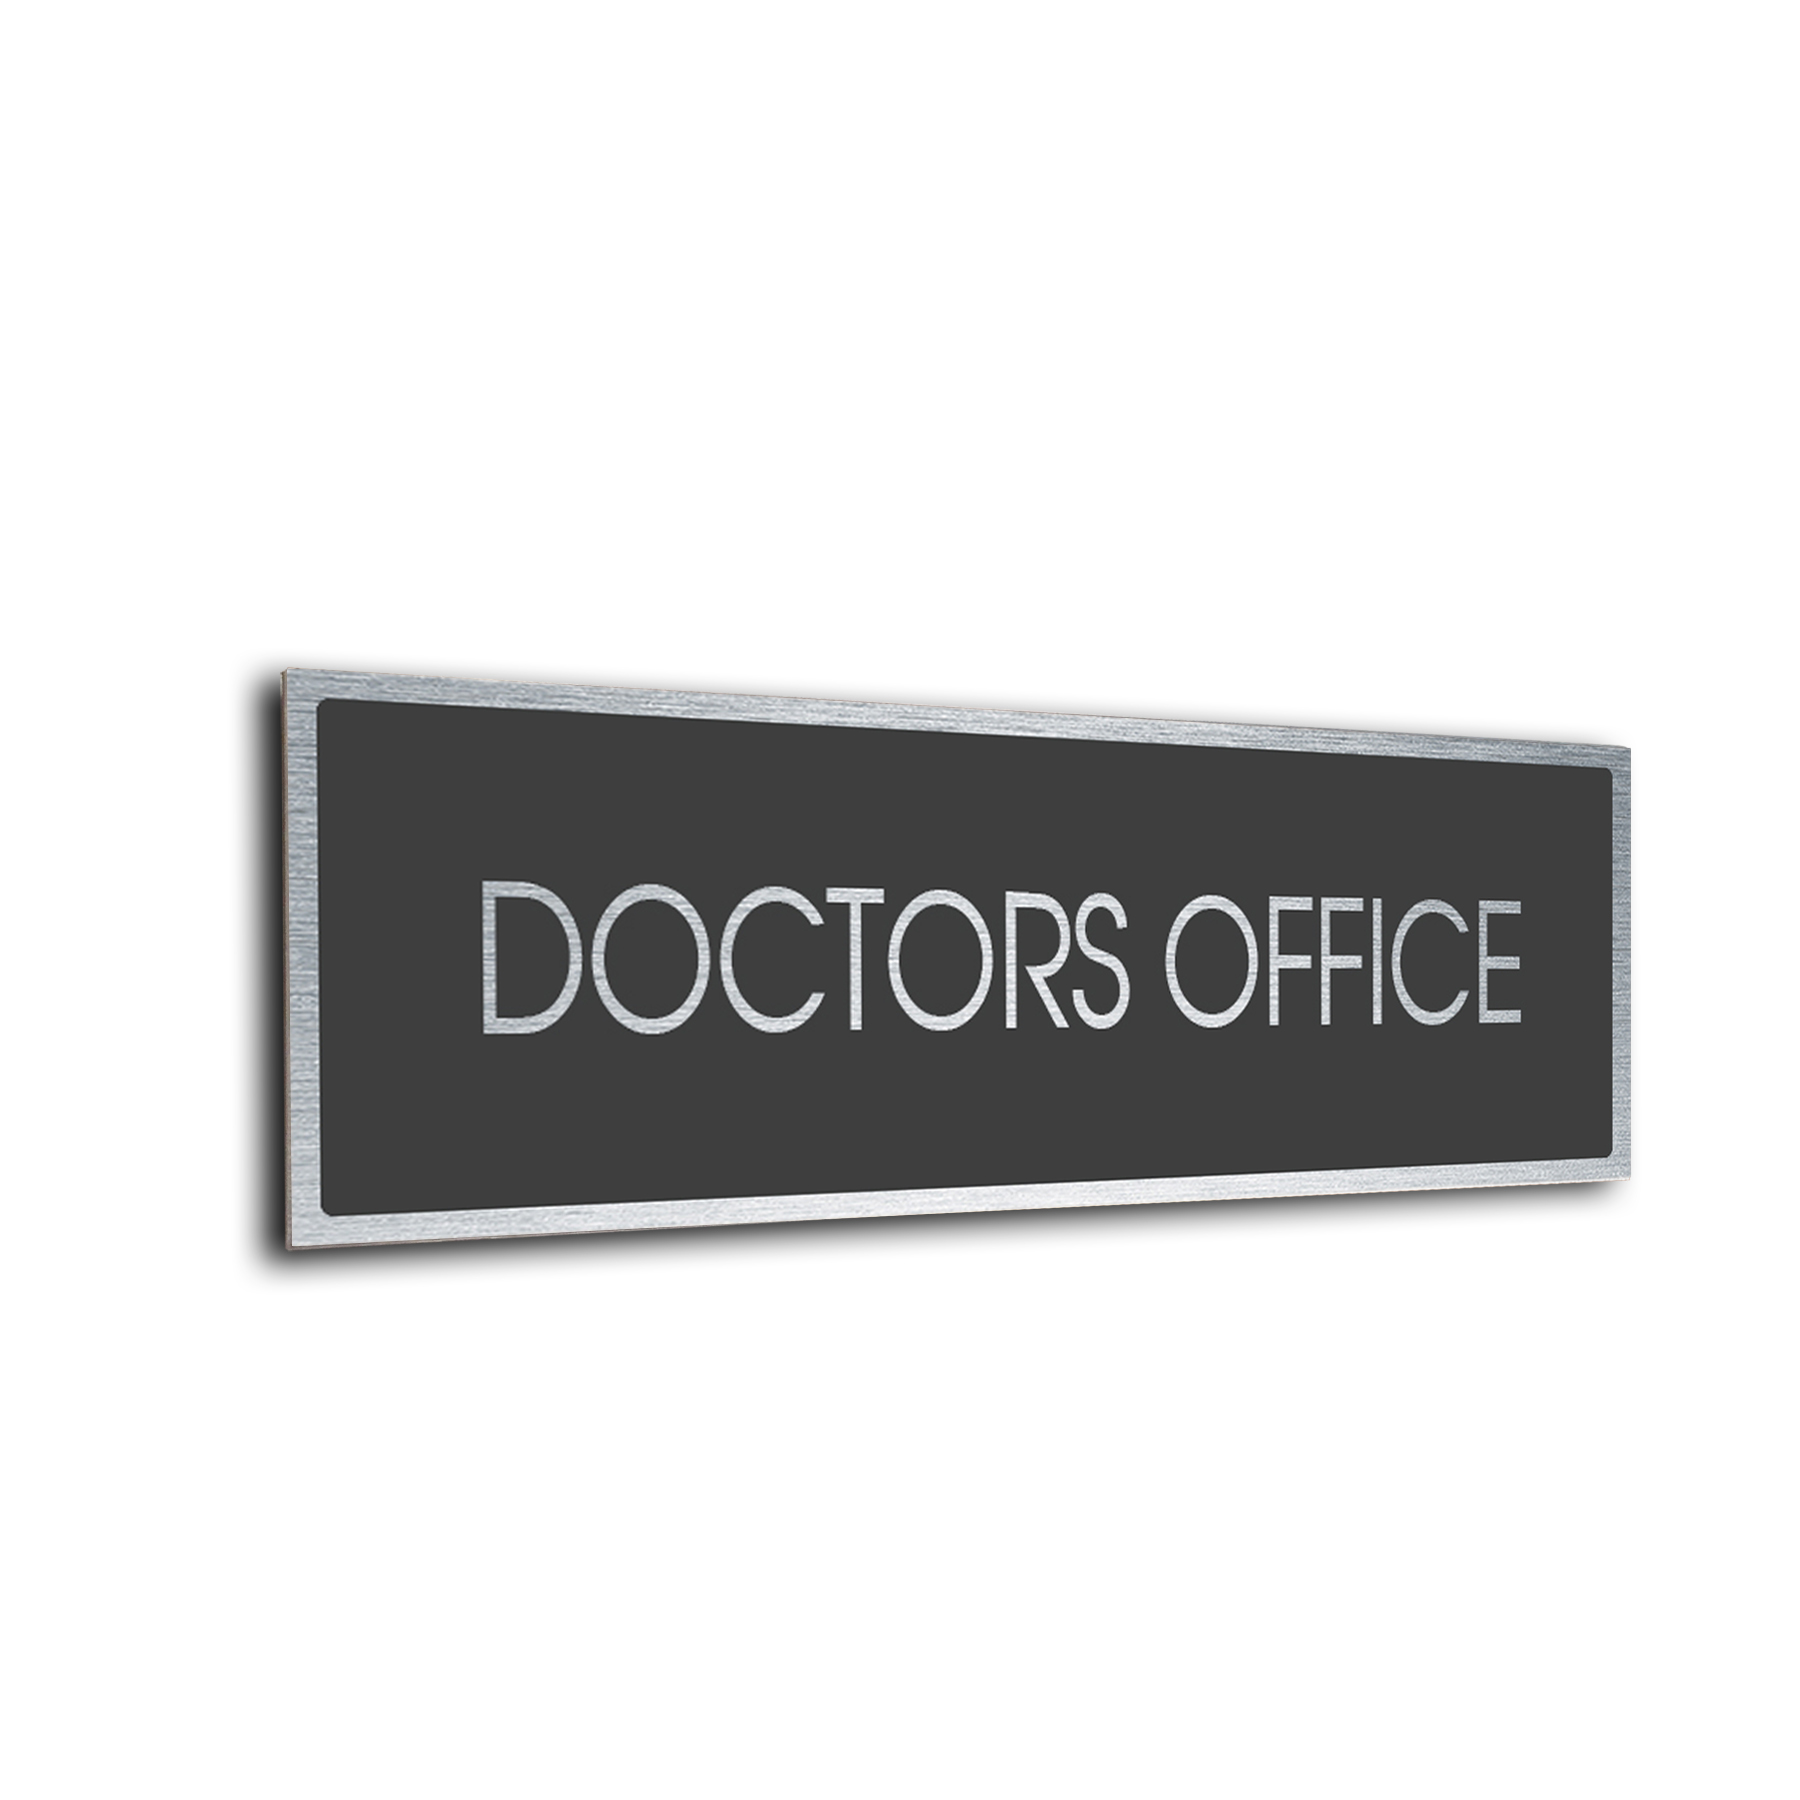 Doctors Office Sign DMDGS 2210119 